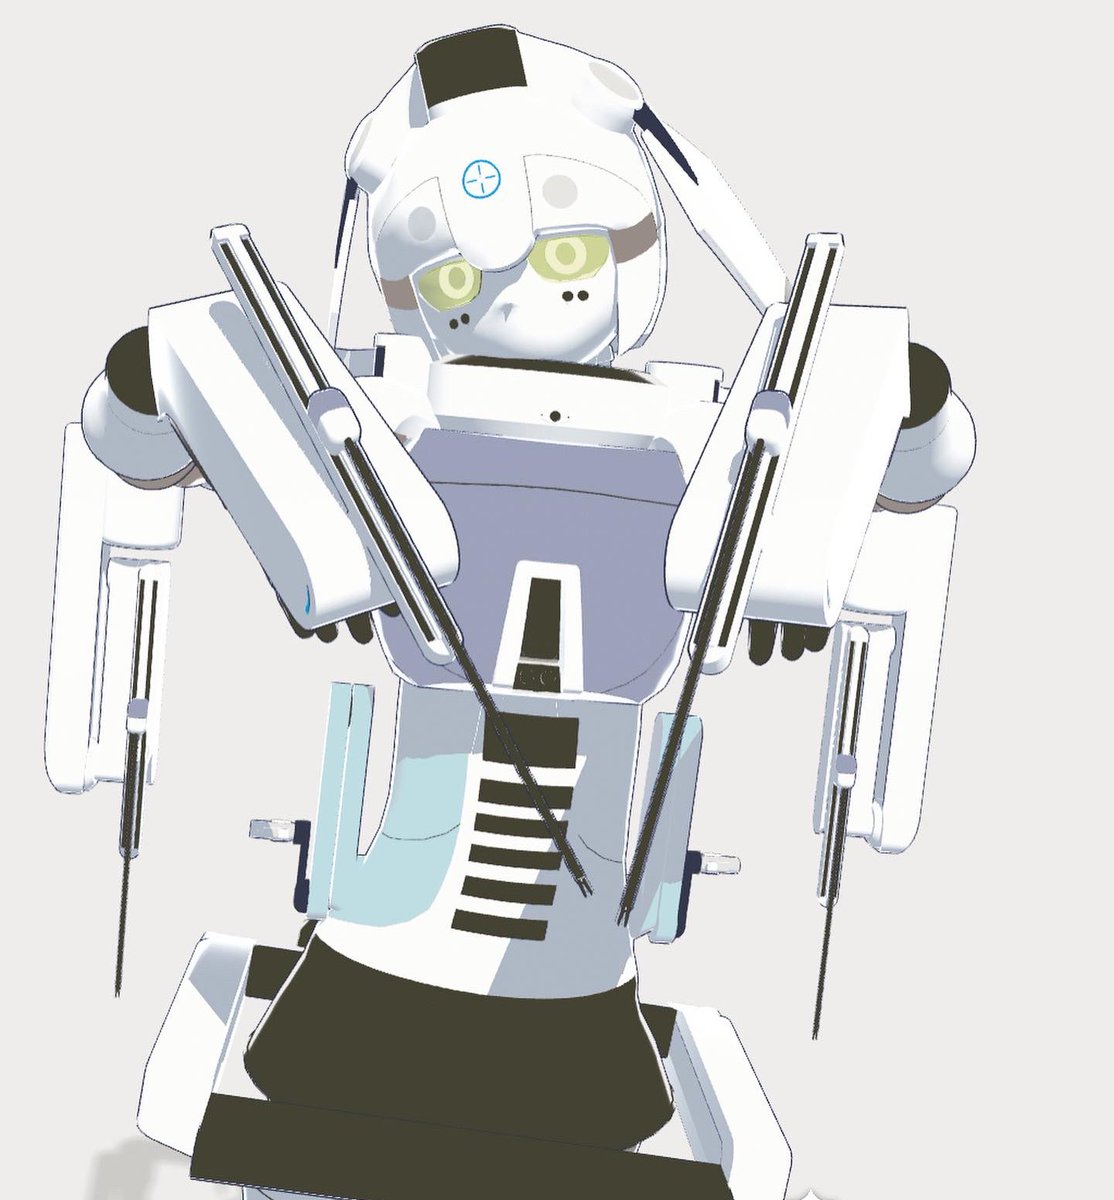 サージィRx-0415
(通称:手術支援ロボット、ダビンチサージカルシステム)
 #お前らロボット所持解禁されたら何持つの 